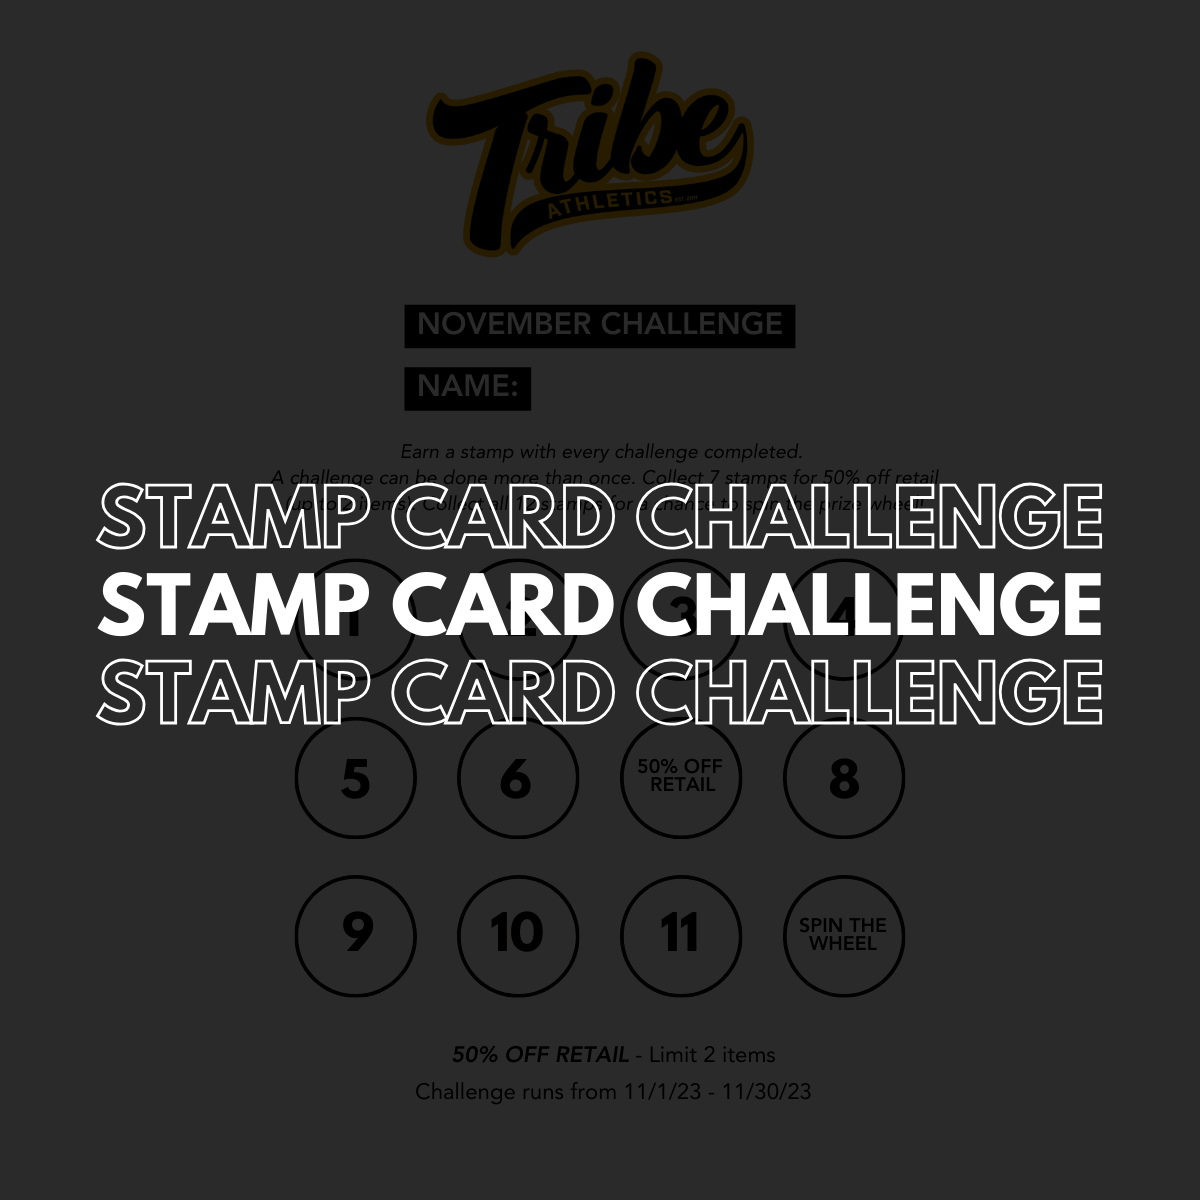 November Stamp Card Challenge!